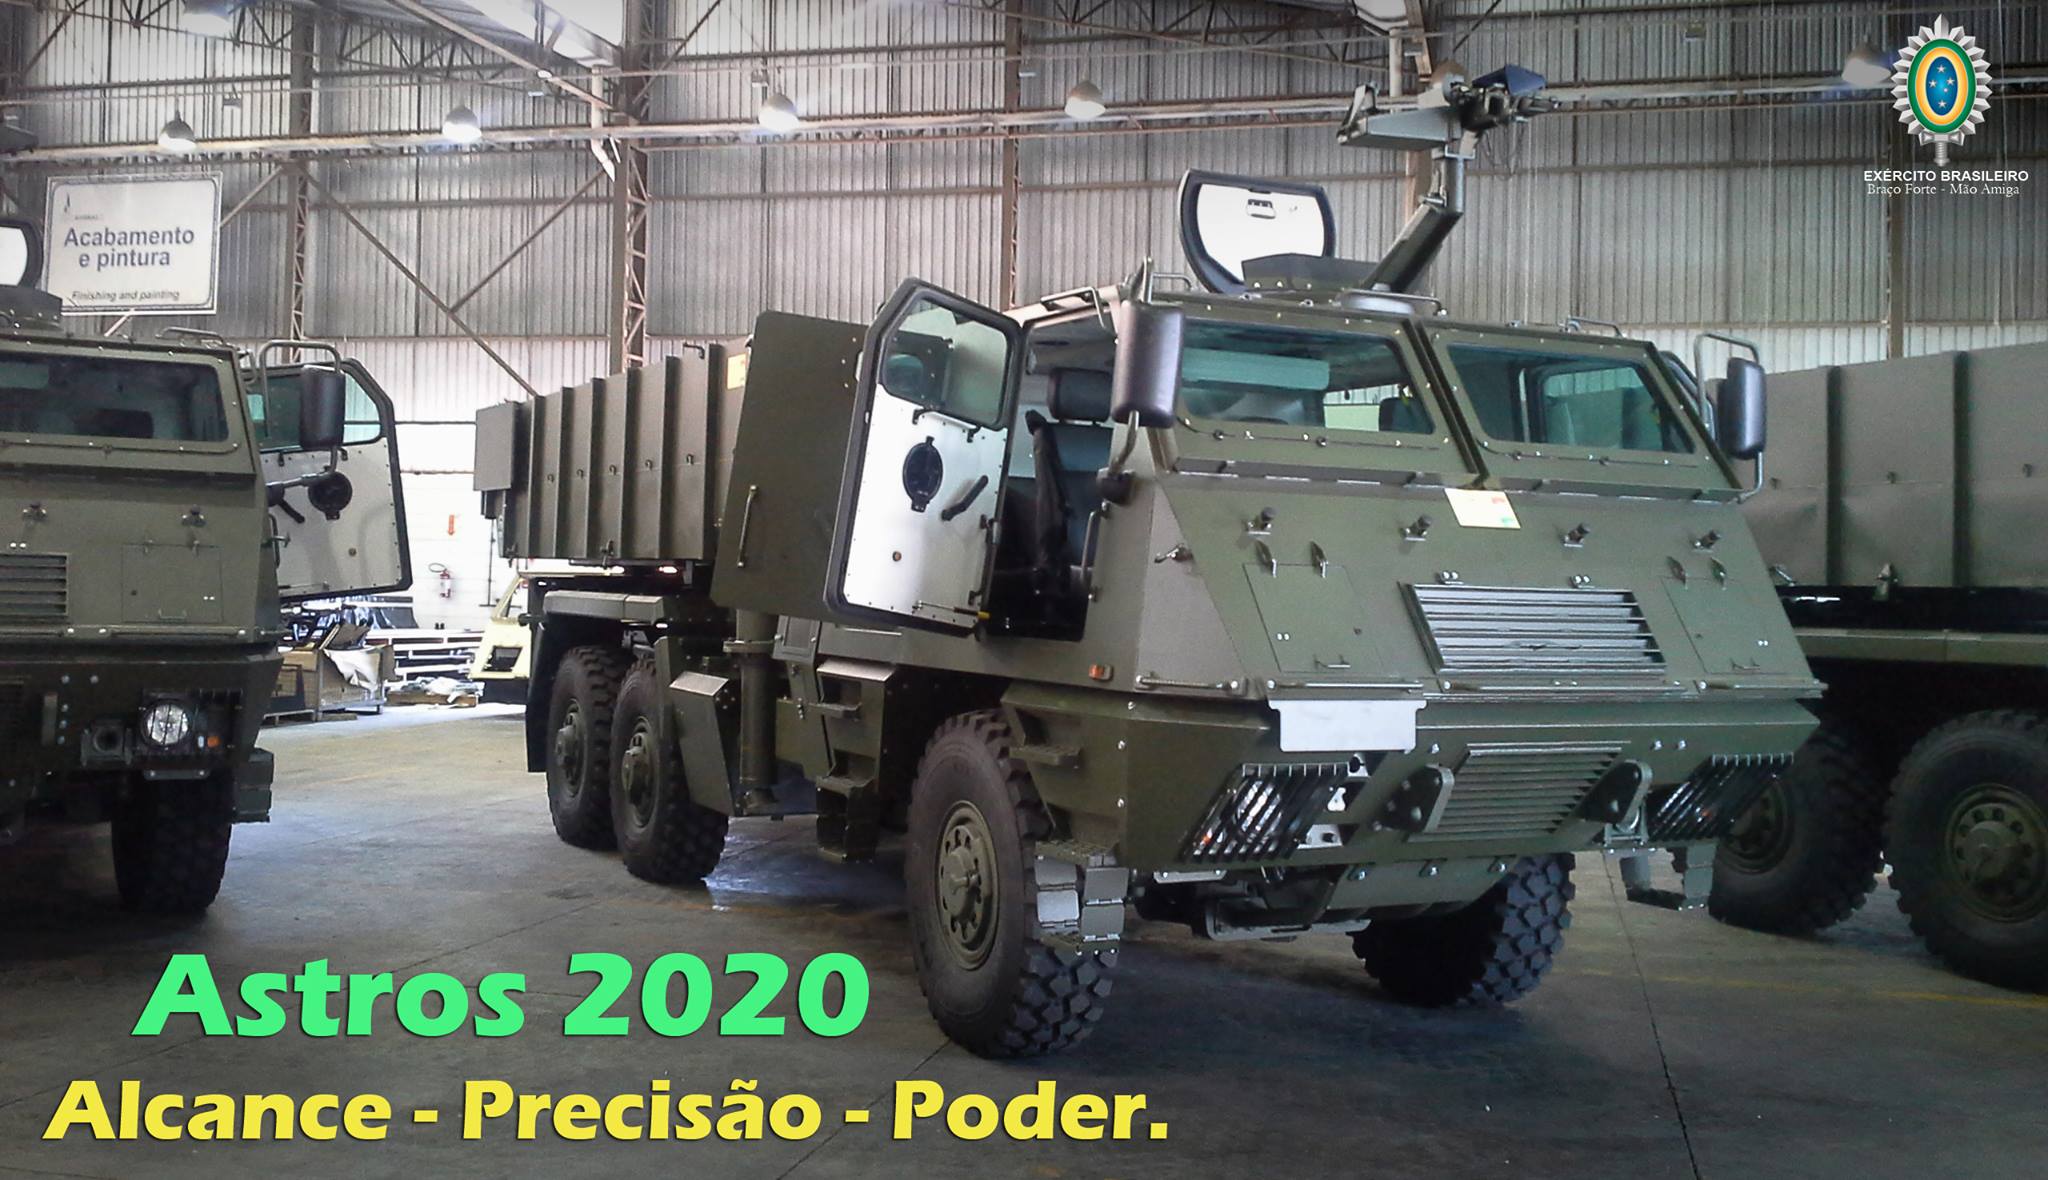 Astros 2020 – Exército Brasileiro recebe primeiras unidades